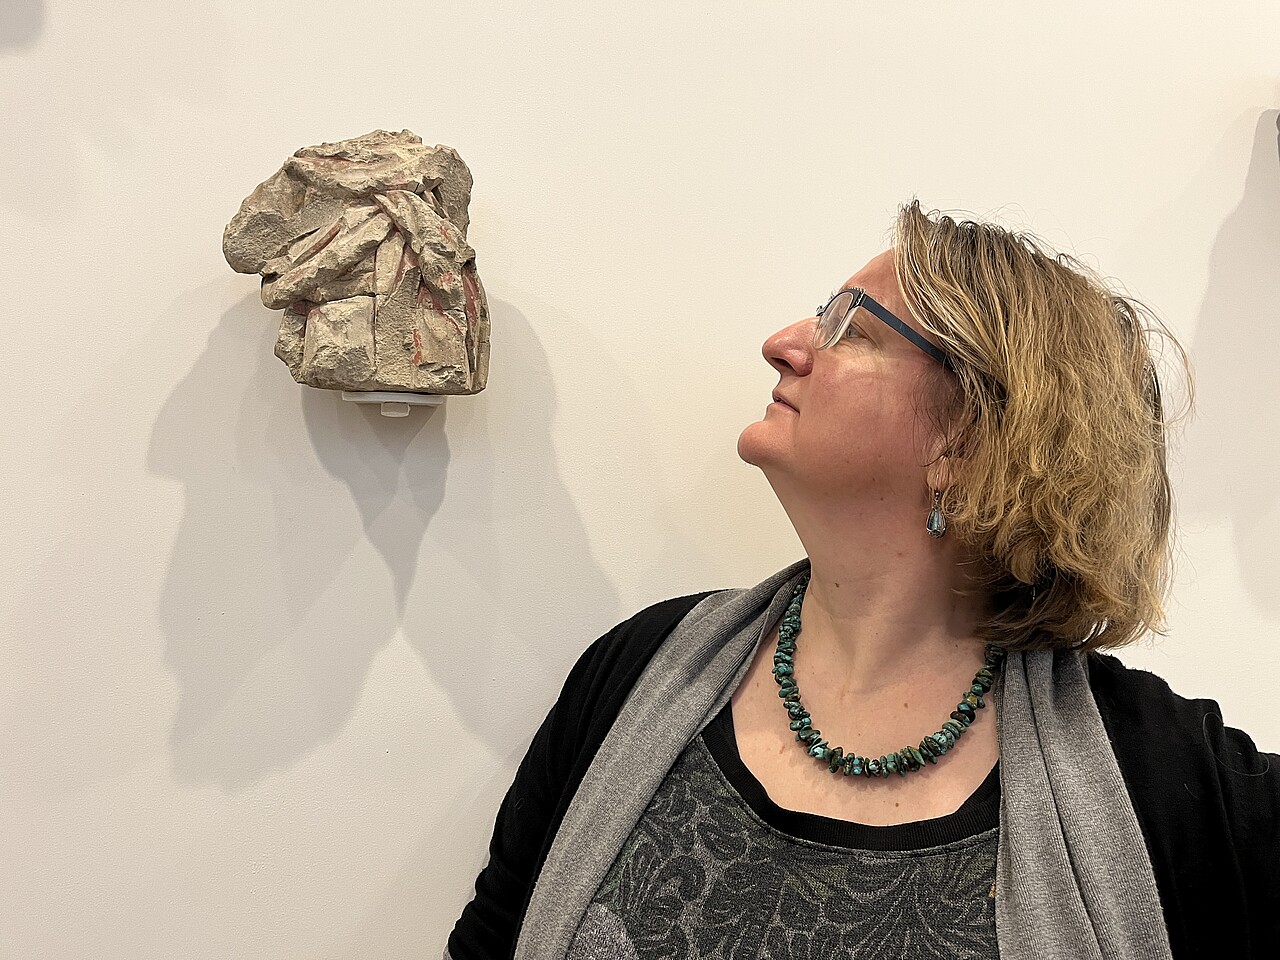 Porträt von Daniela Nicklas, sie blickt links neben sich auf eine abstrakte Skulptur an der Wand.